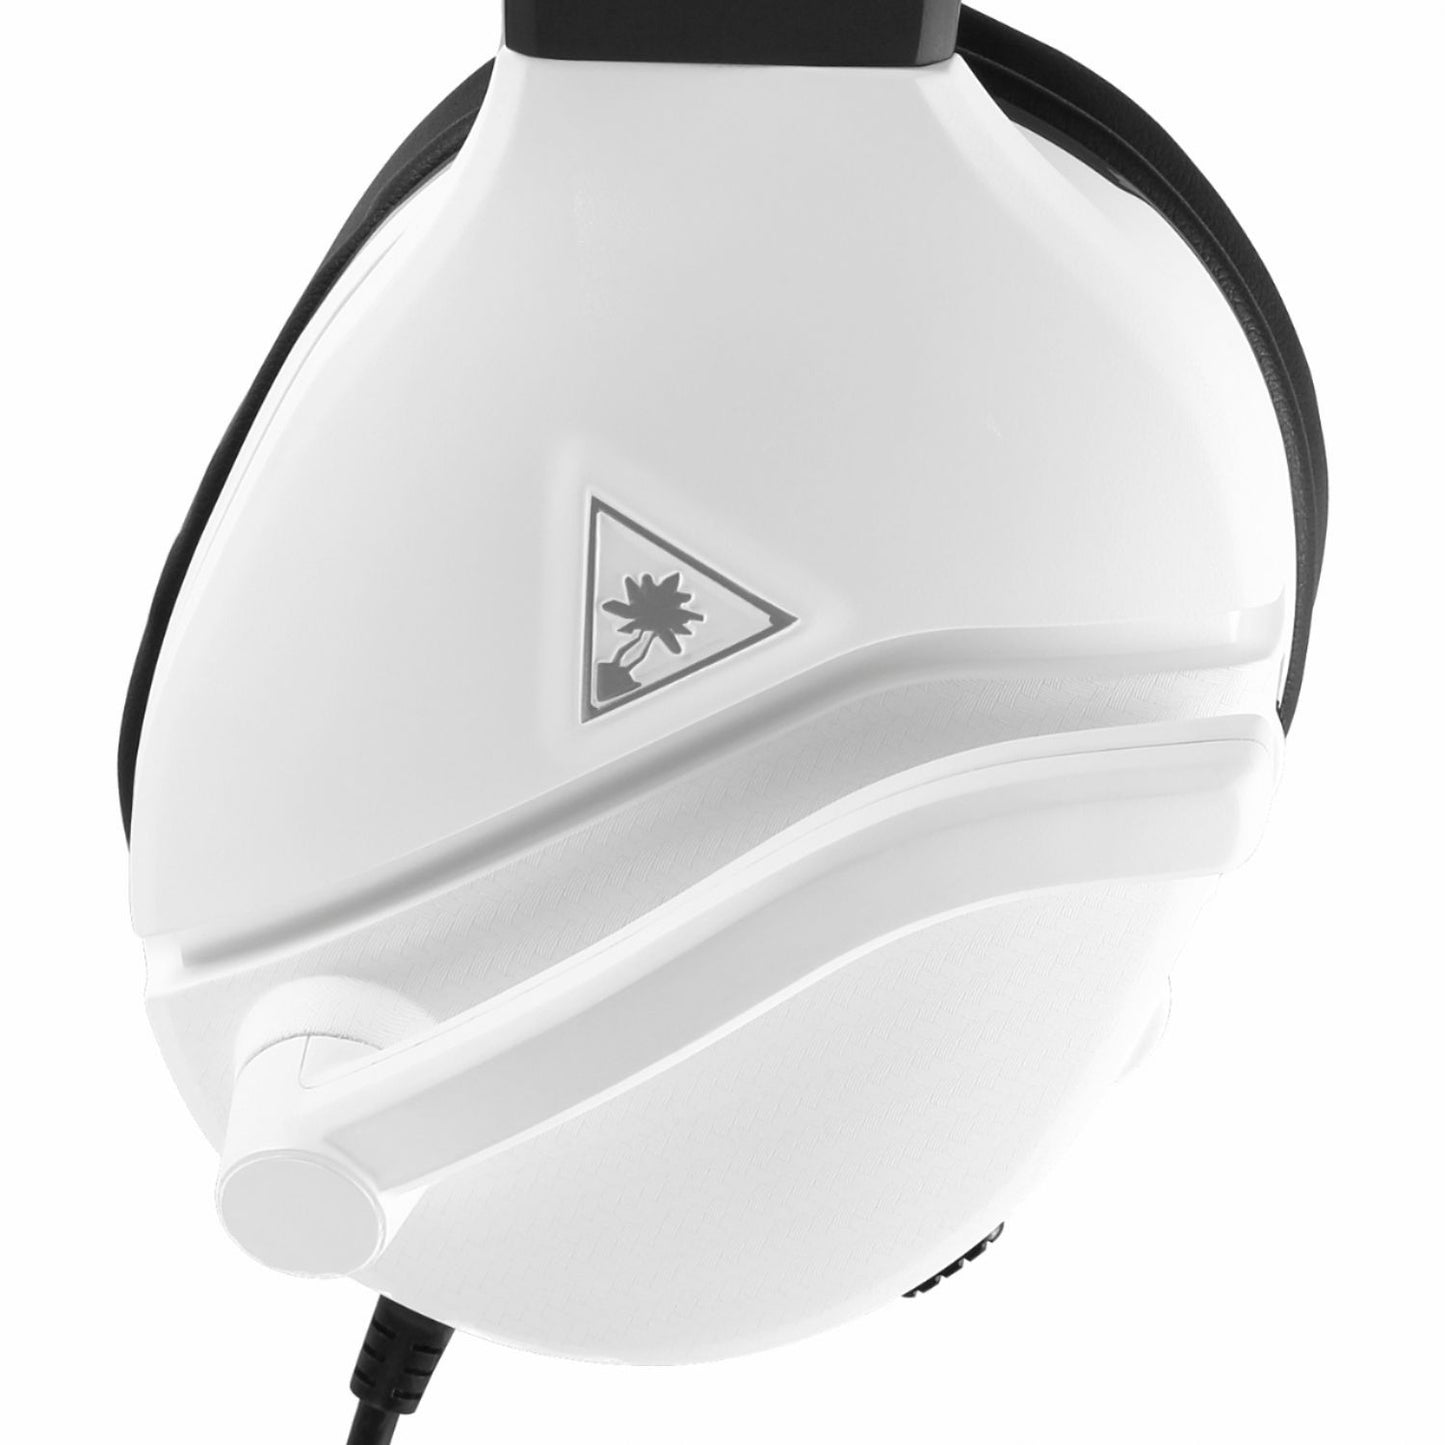 Recon 200 Headset - White - Rekes Sales